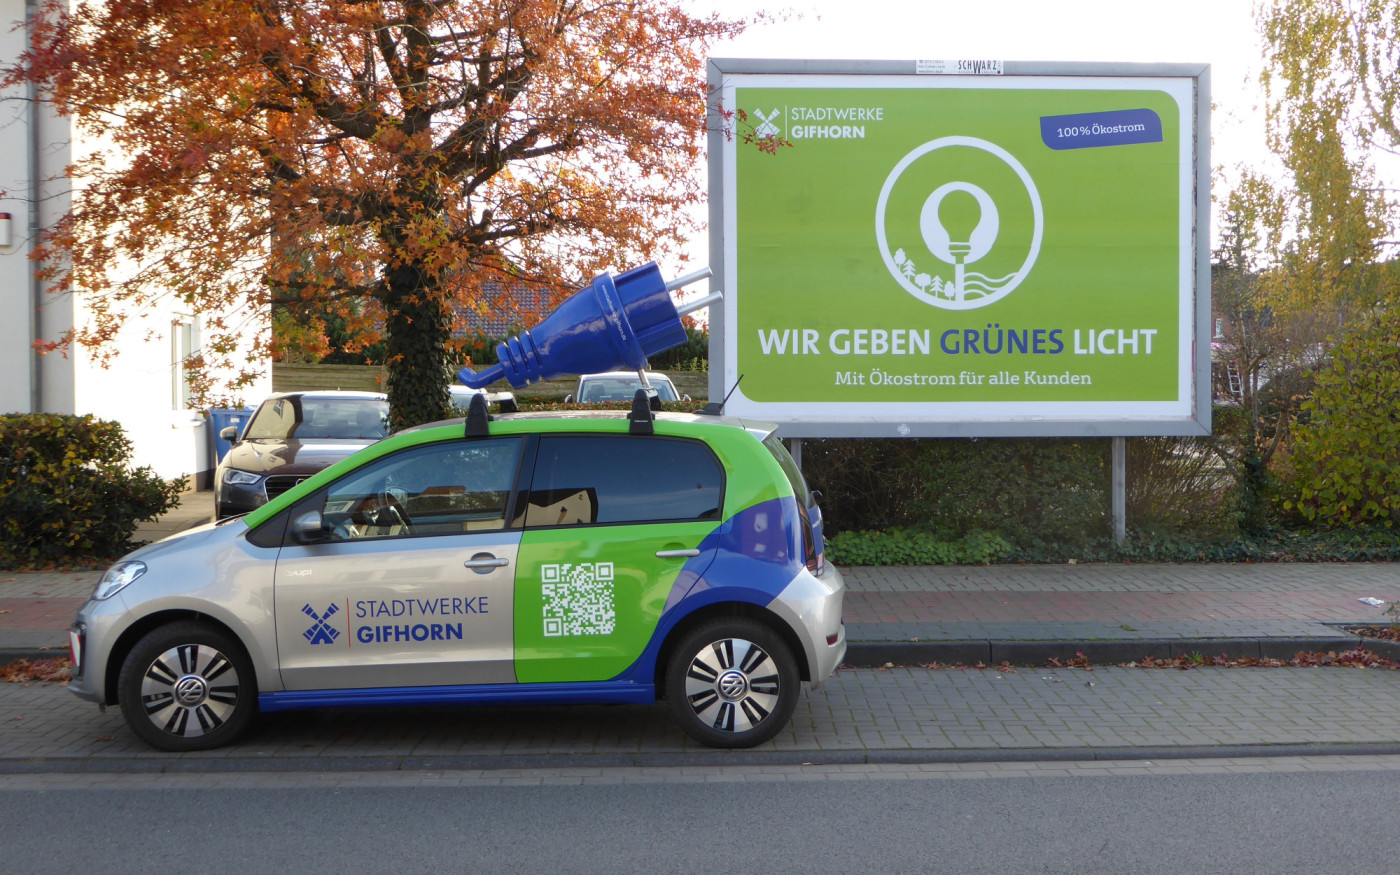 Die Stadtwerke Gifhorn geben grünes Licht: In Zukunft 100 Prozent Ökostrom für die Region